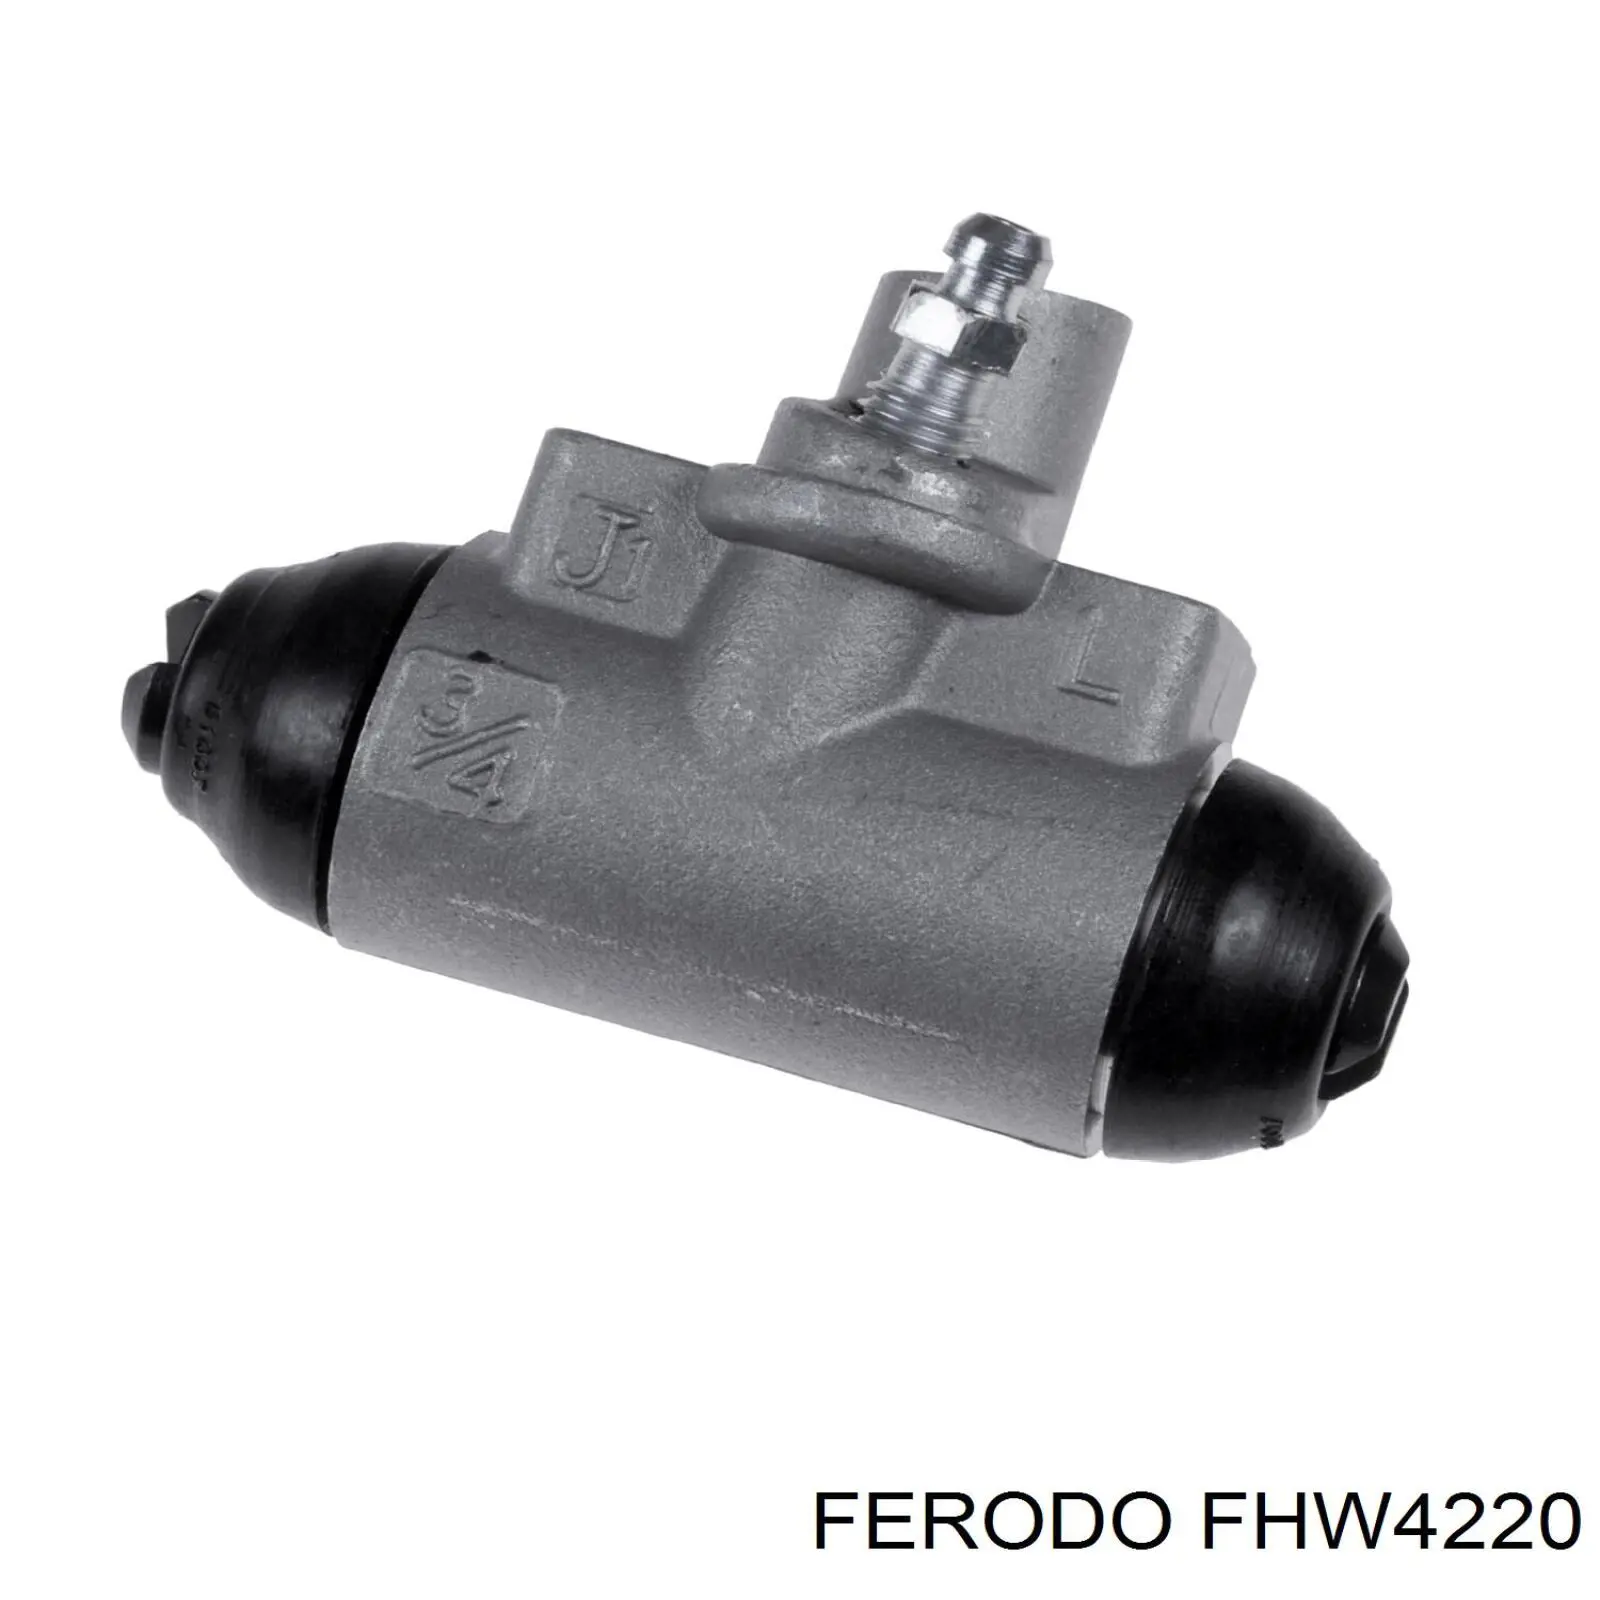 FHW4220 Ferodo cilindro de freno de rueda trasero